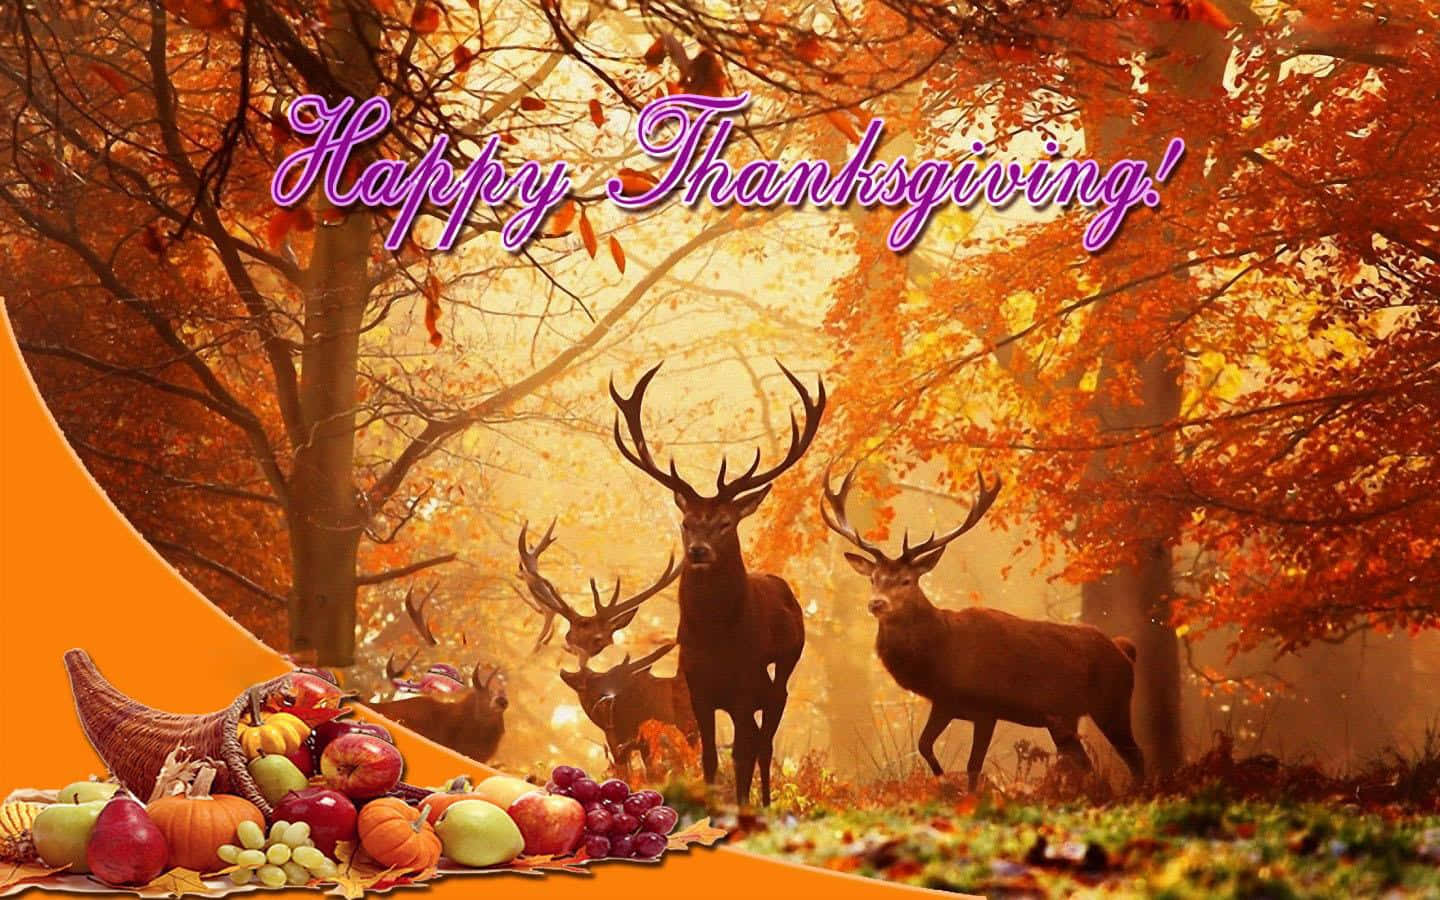 Attfira Tacksamhet Detta Thanksgiving. Wallpaper